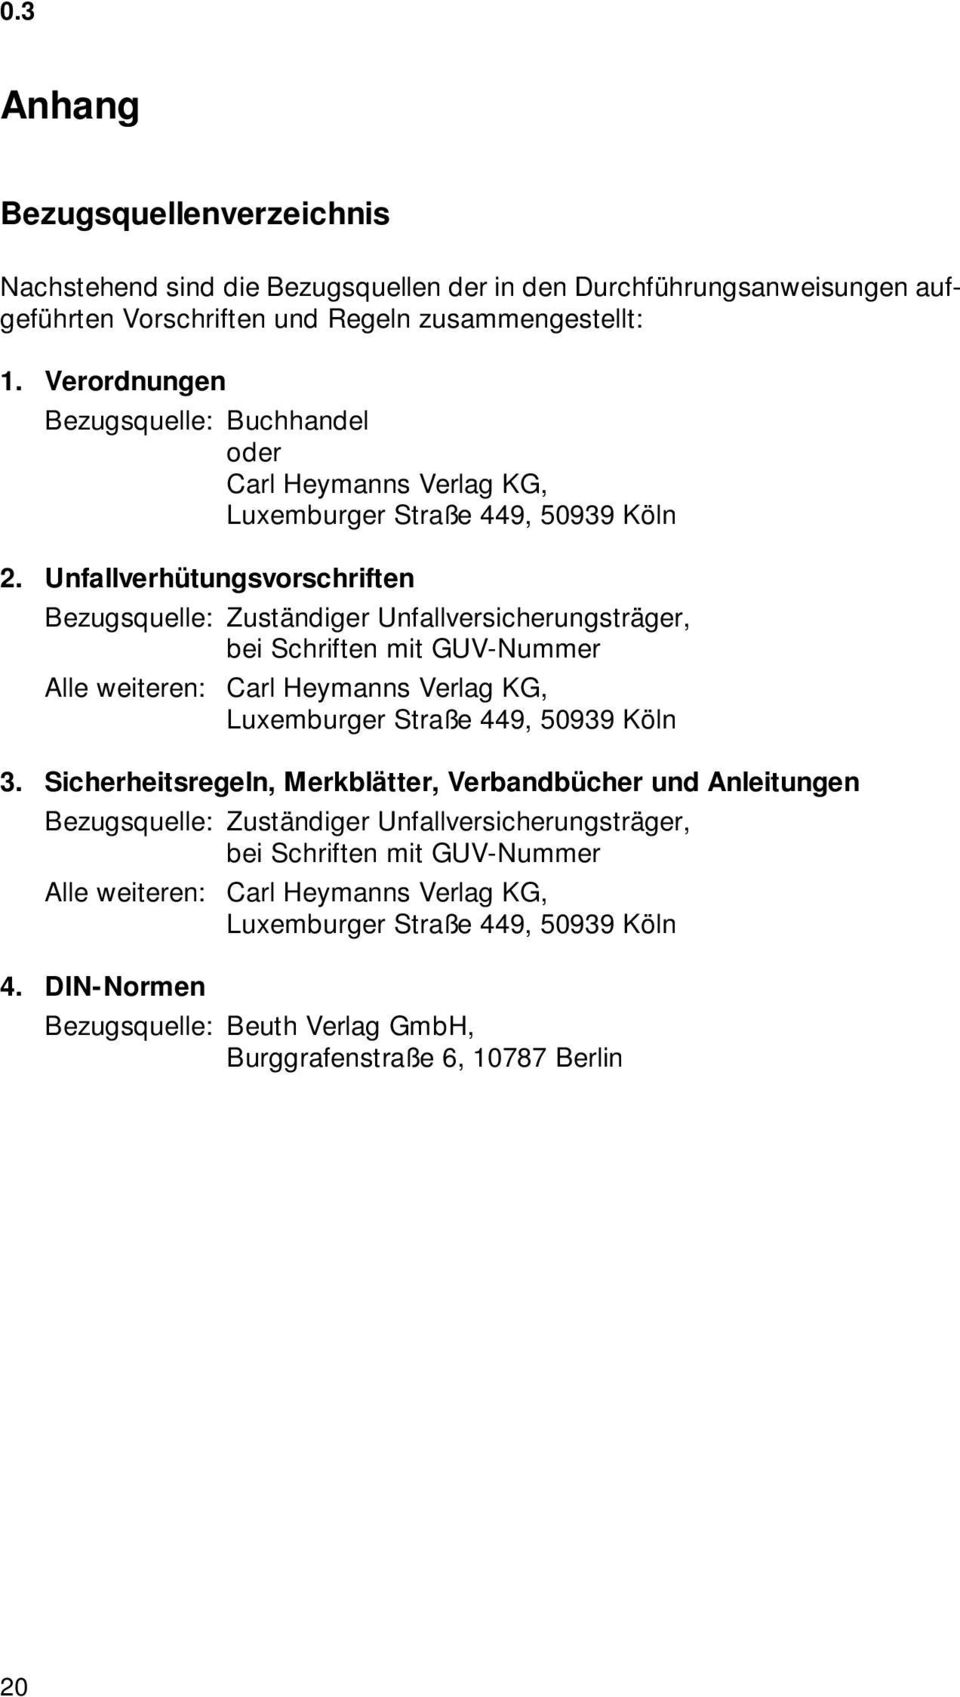 Unfallverhütungsvorschriften Bezugsquelle: Zuständiger Unfallversicherungsträger, bei Schriften mit GUV-Nummer Alle weiteren: Carl Heymanns Verlag KG, Luxemburger Straße 449, 50939 Köln 3.